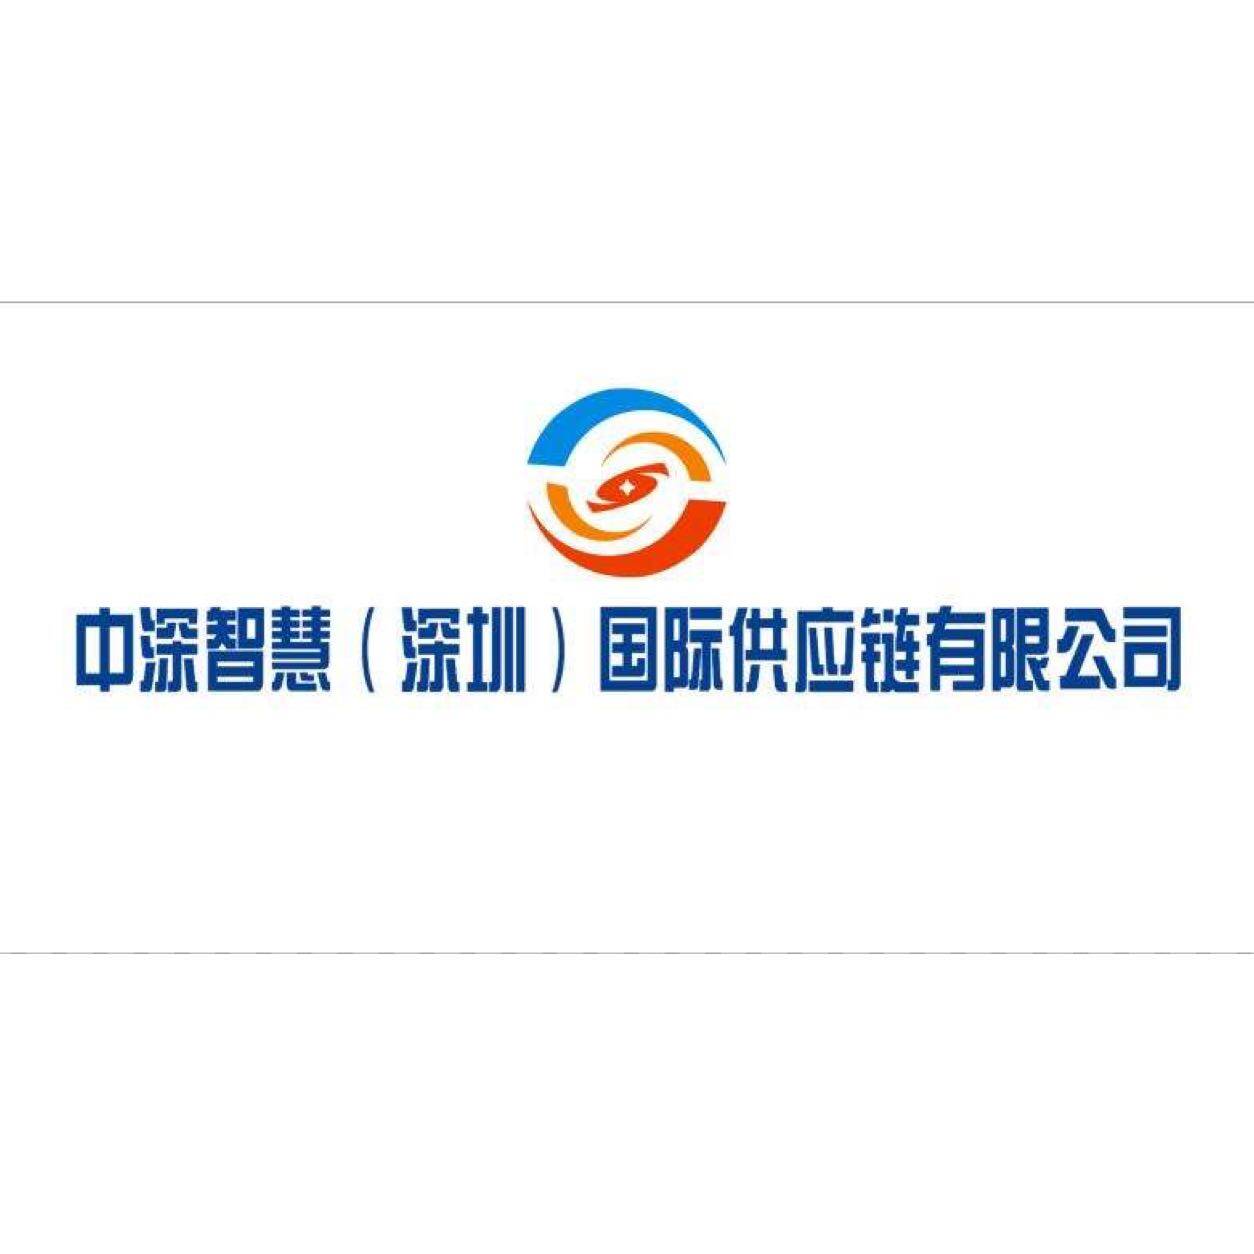 中深智慧国际供应链招聘logo